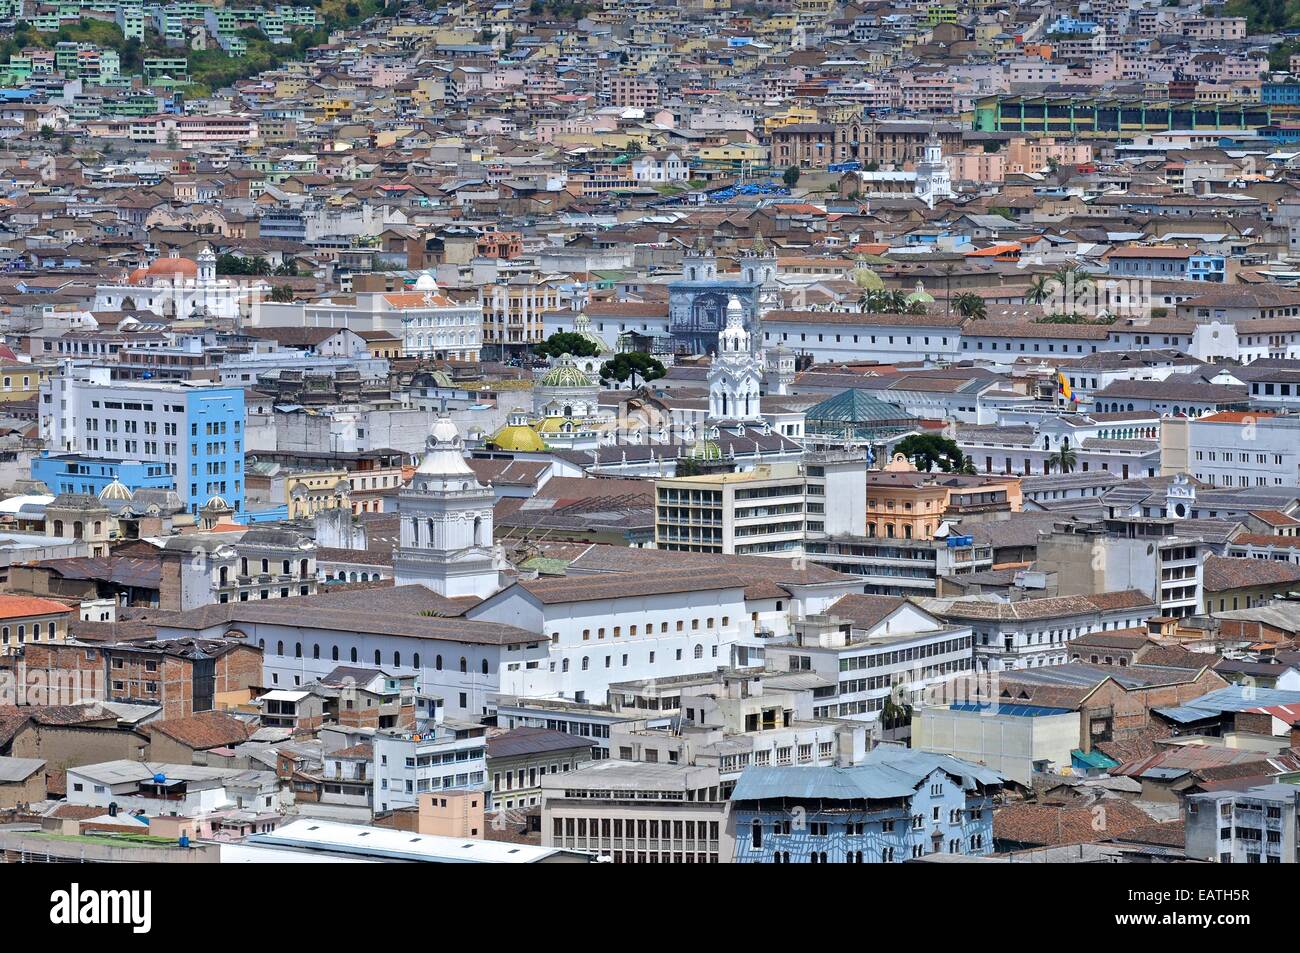 Ein Blick auf die Altstadt Quitos, ein UNESCO-Weltkulturerbe. Stockfoto